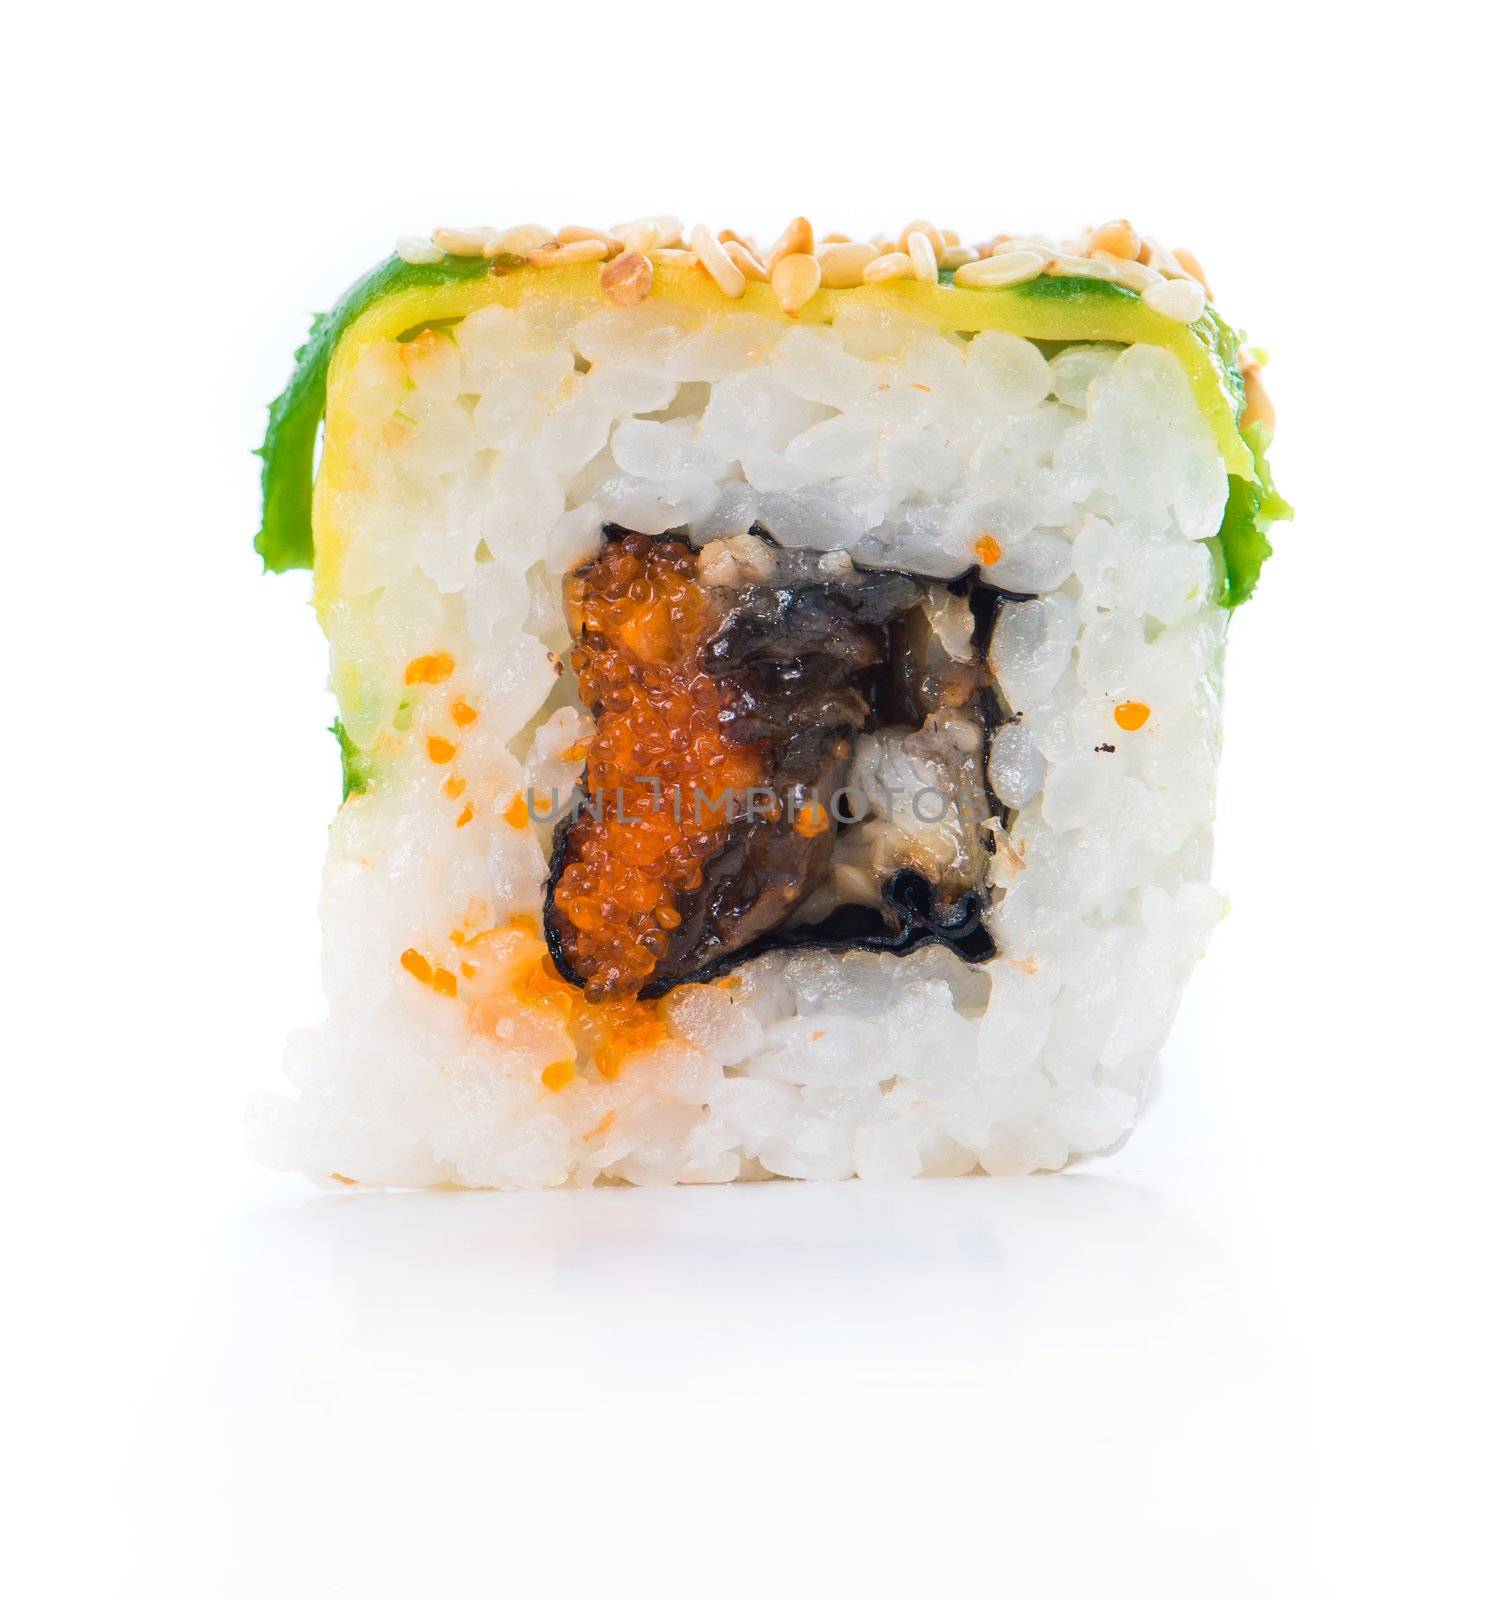 Sushi isolated on a white background